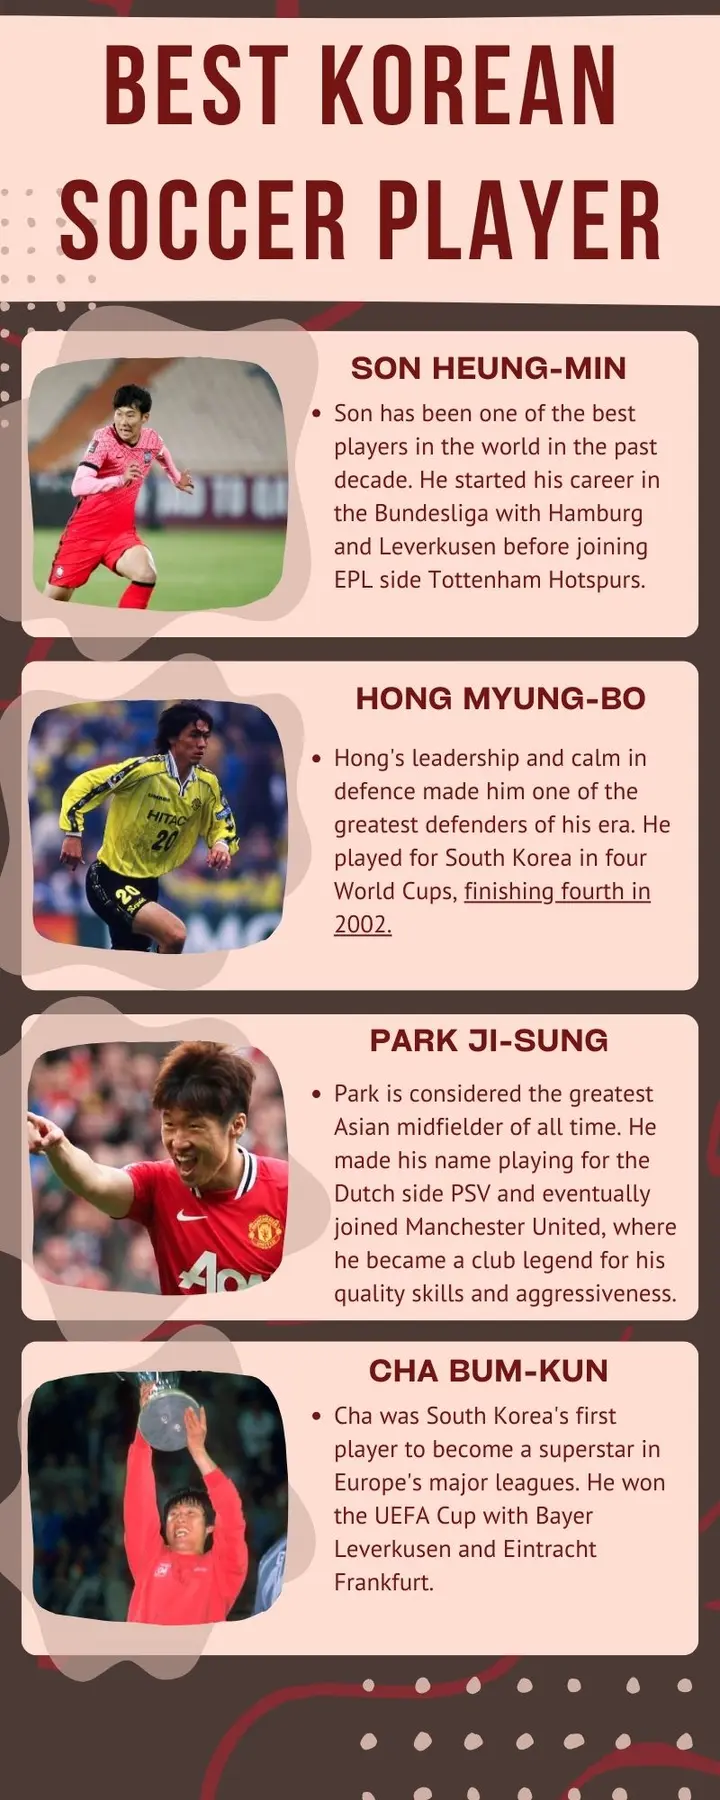 Best Korean soccer player